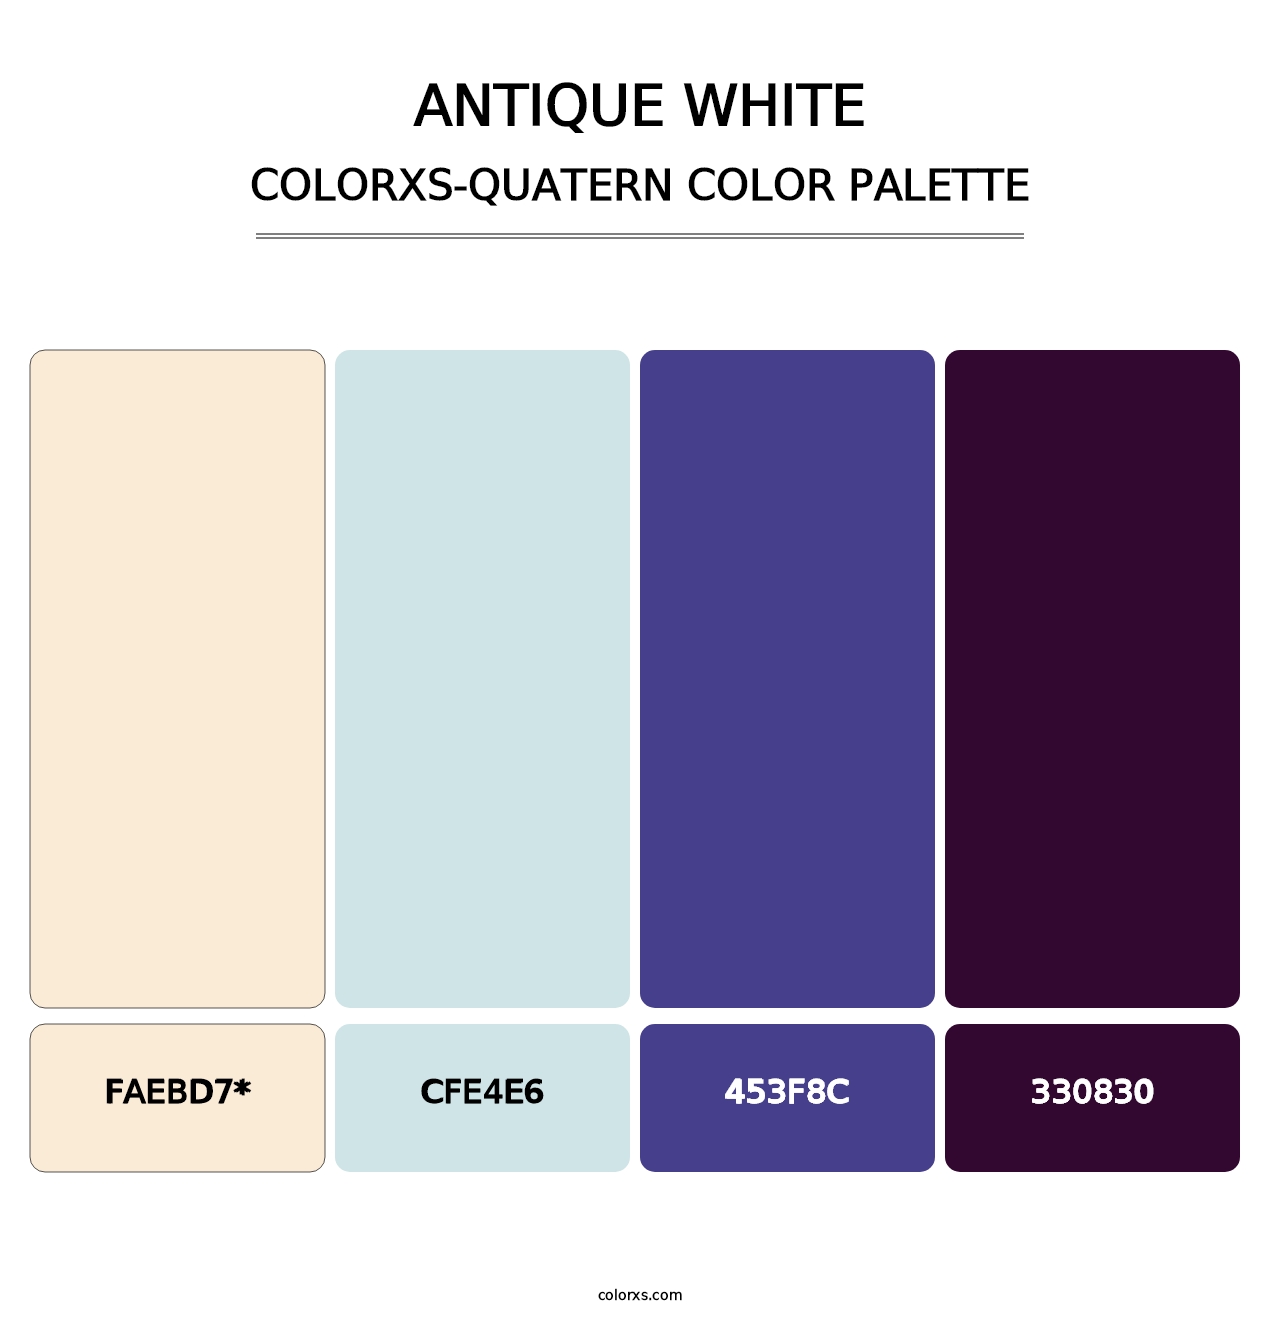 Antique White - Colorxs Quatern Palette